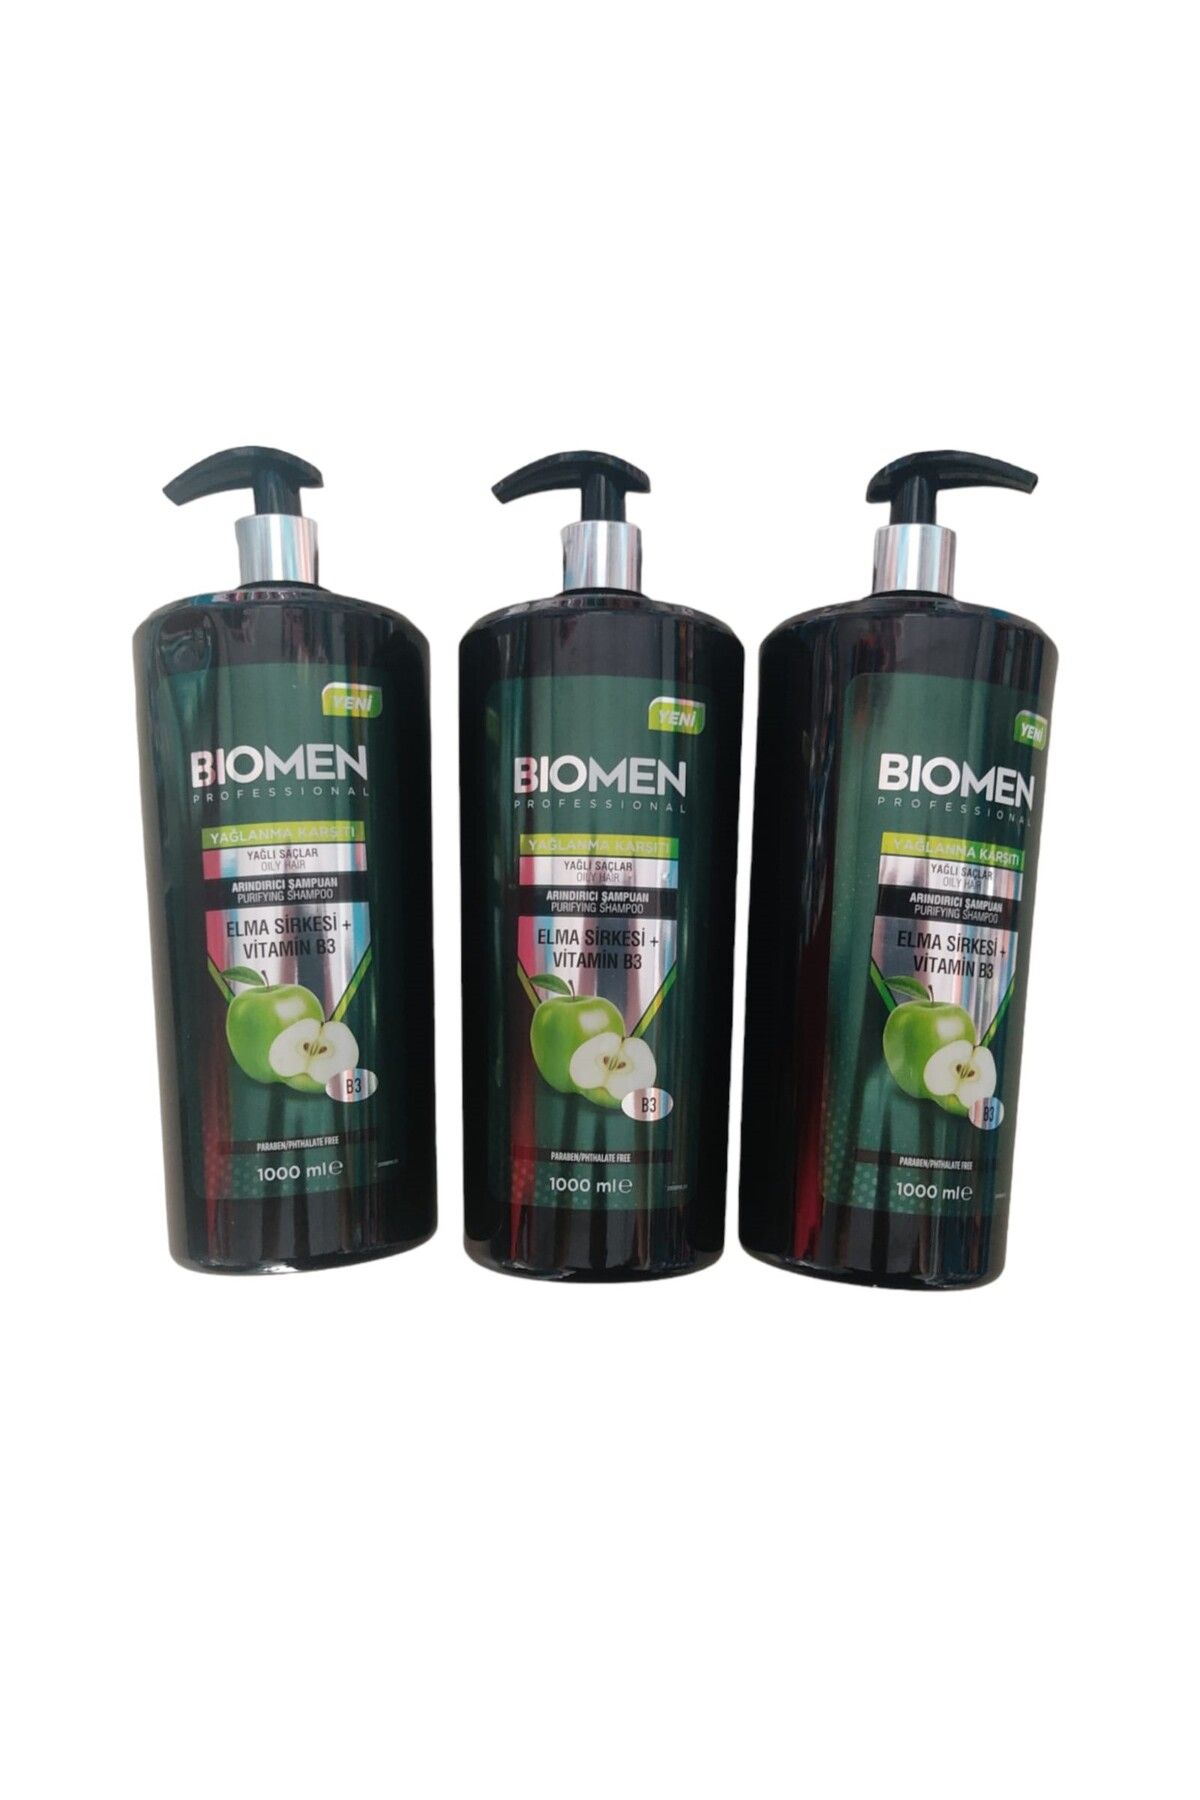 Biomen Elma Sirkesi B3 Vitaminili Arındırıcı Şampuan Seti Sette (3*1000ML:3000 ML)